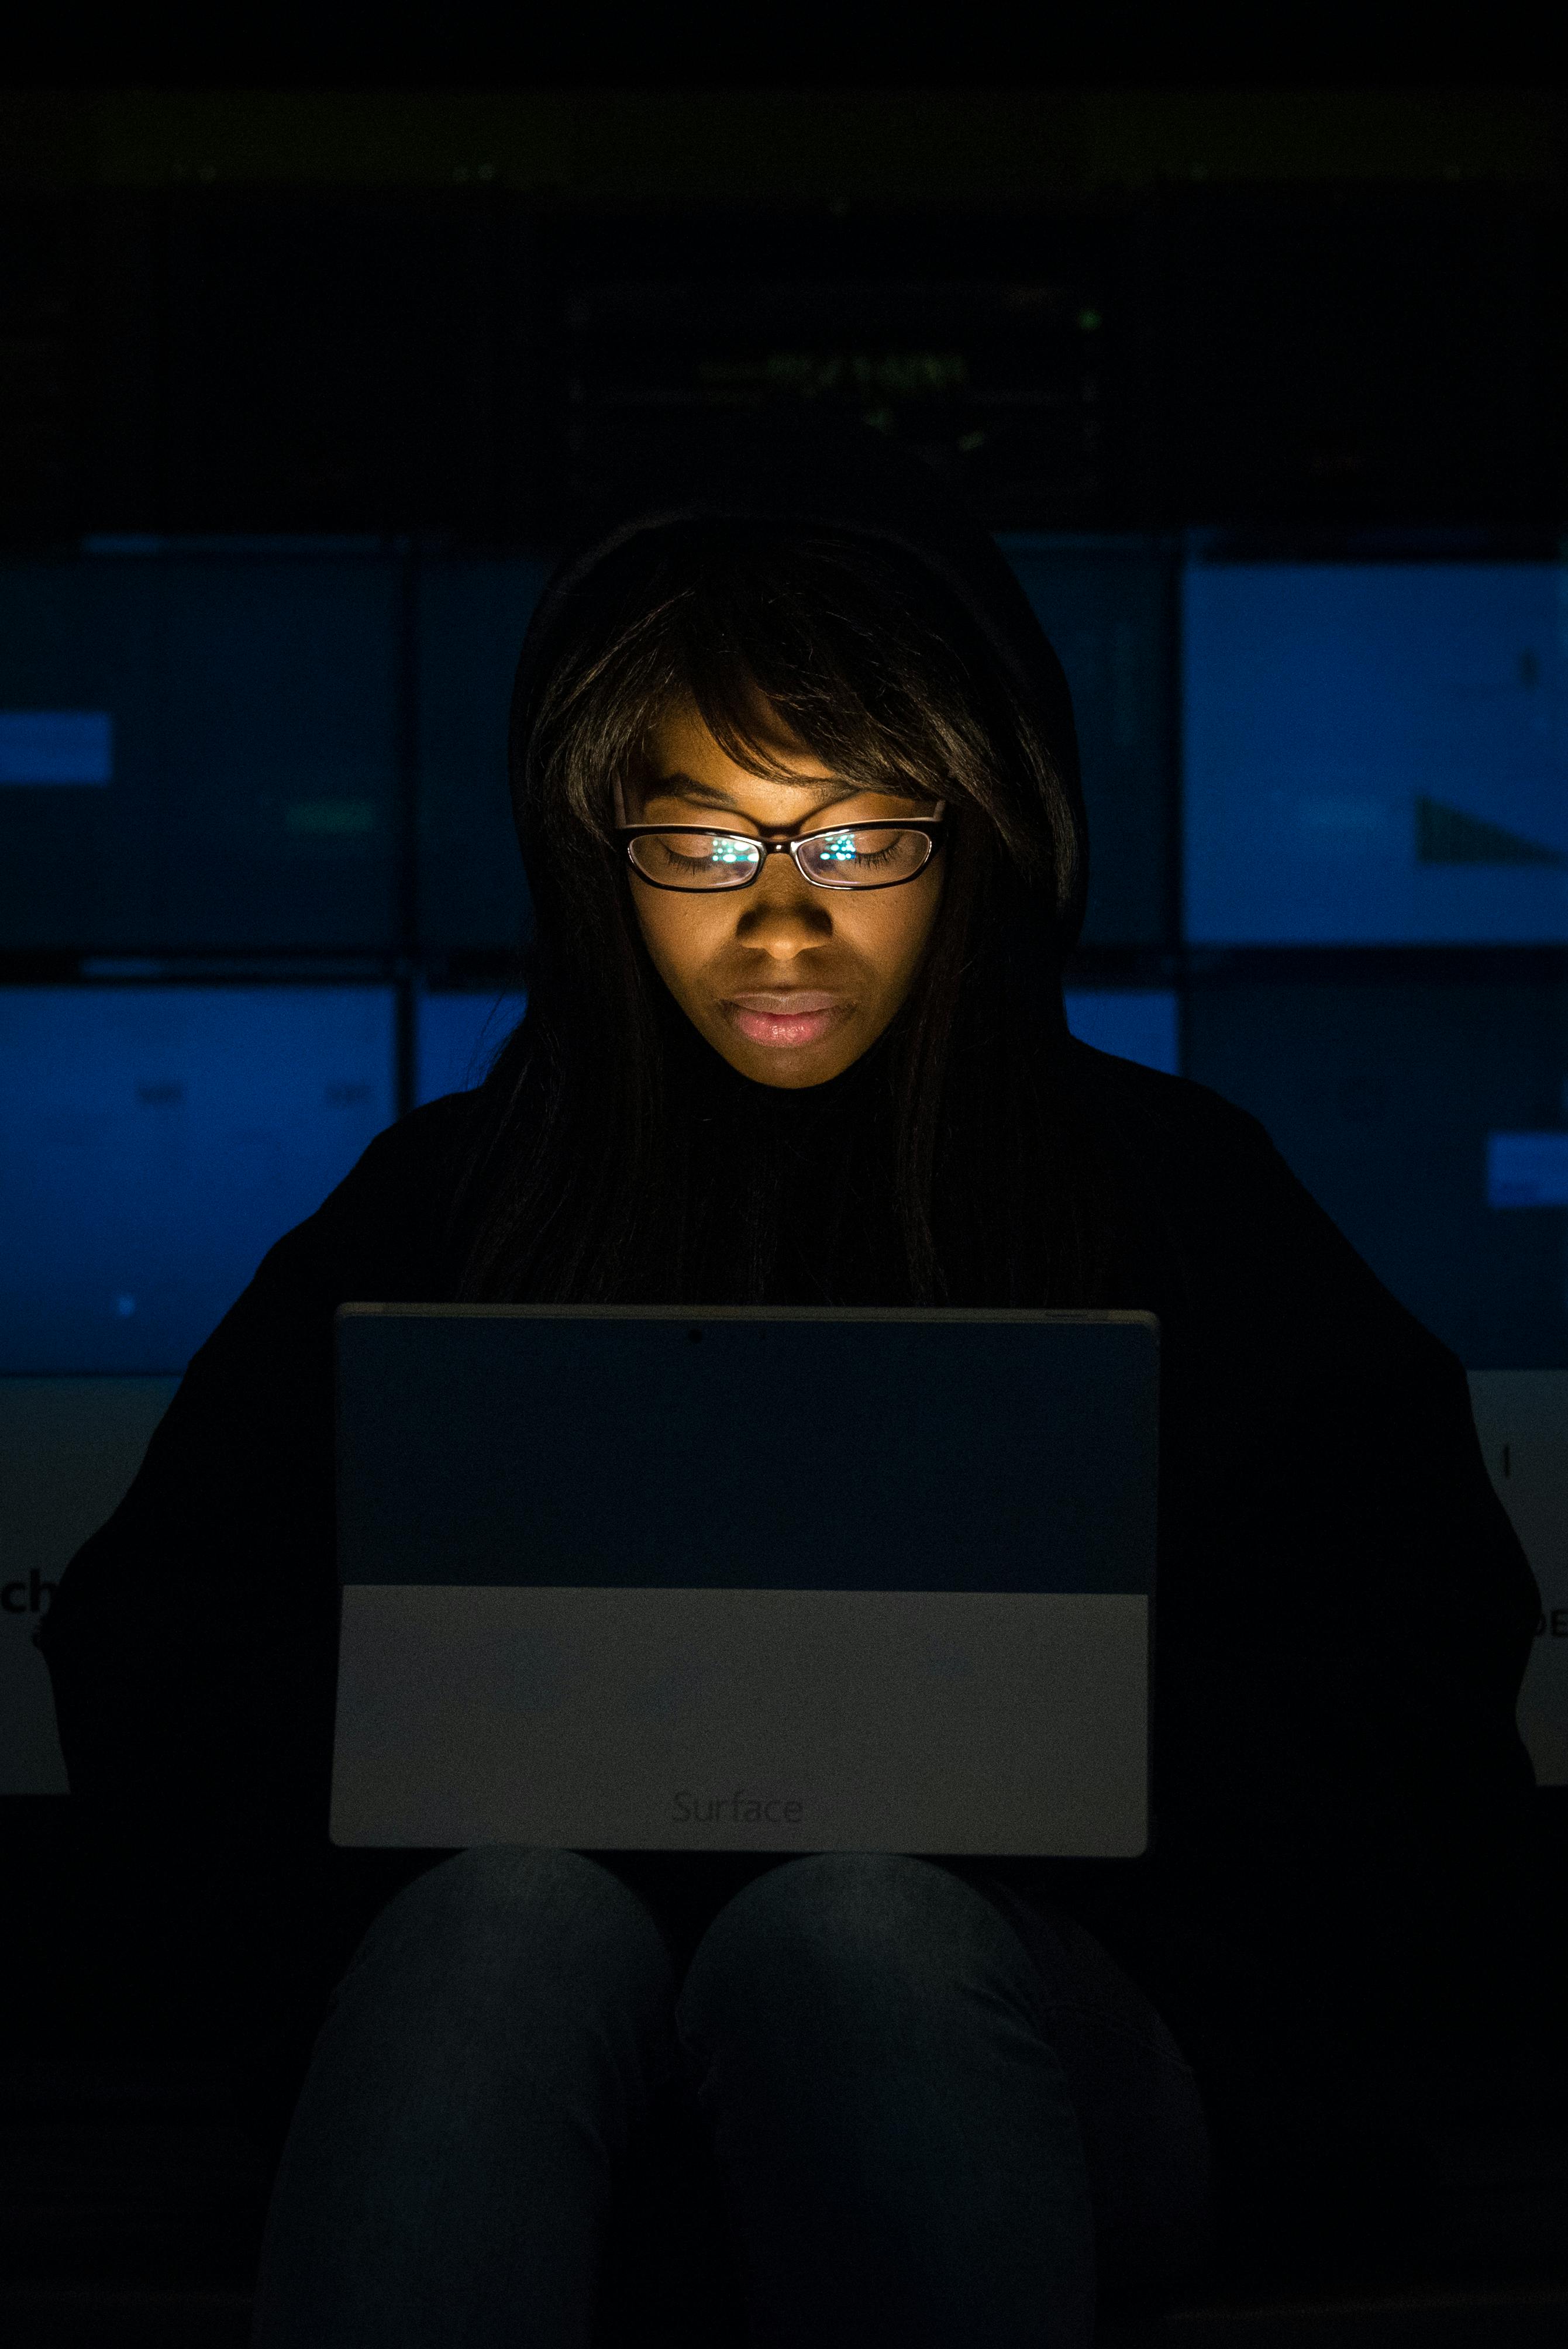 woman wearing eyeglasses looking at tablet computer in dark room